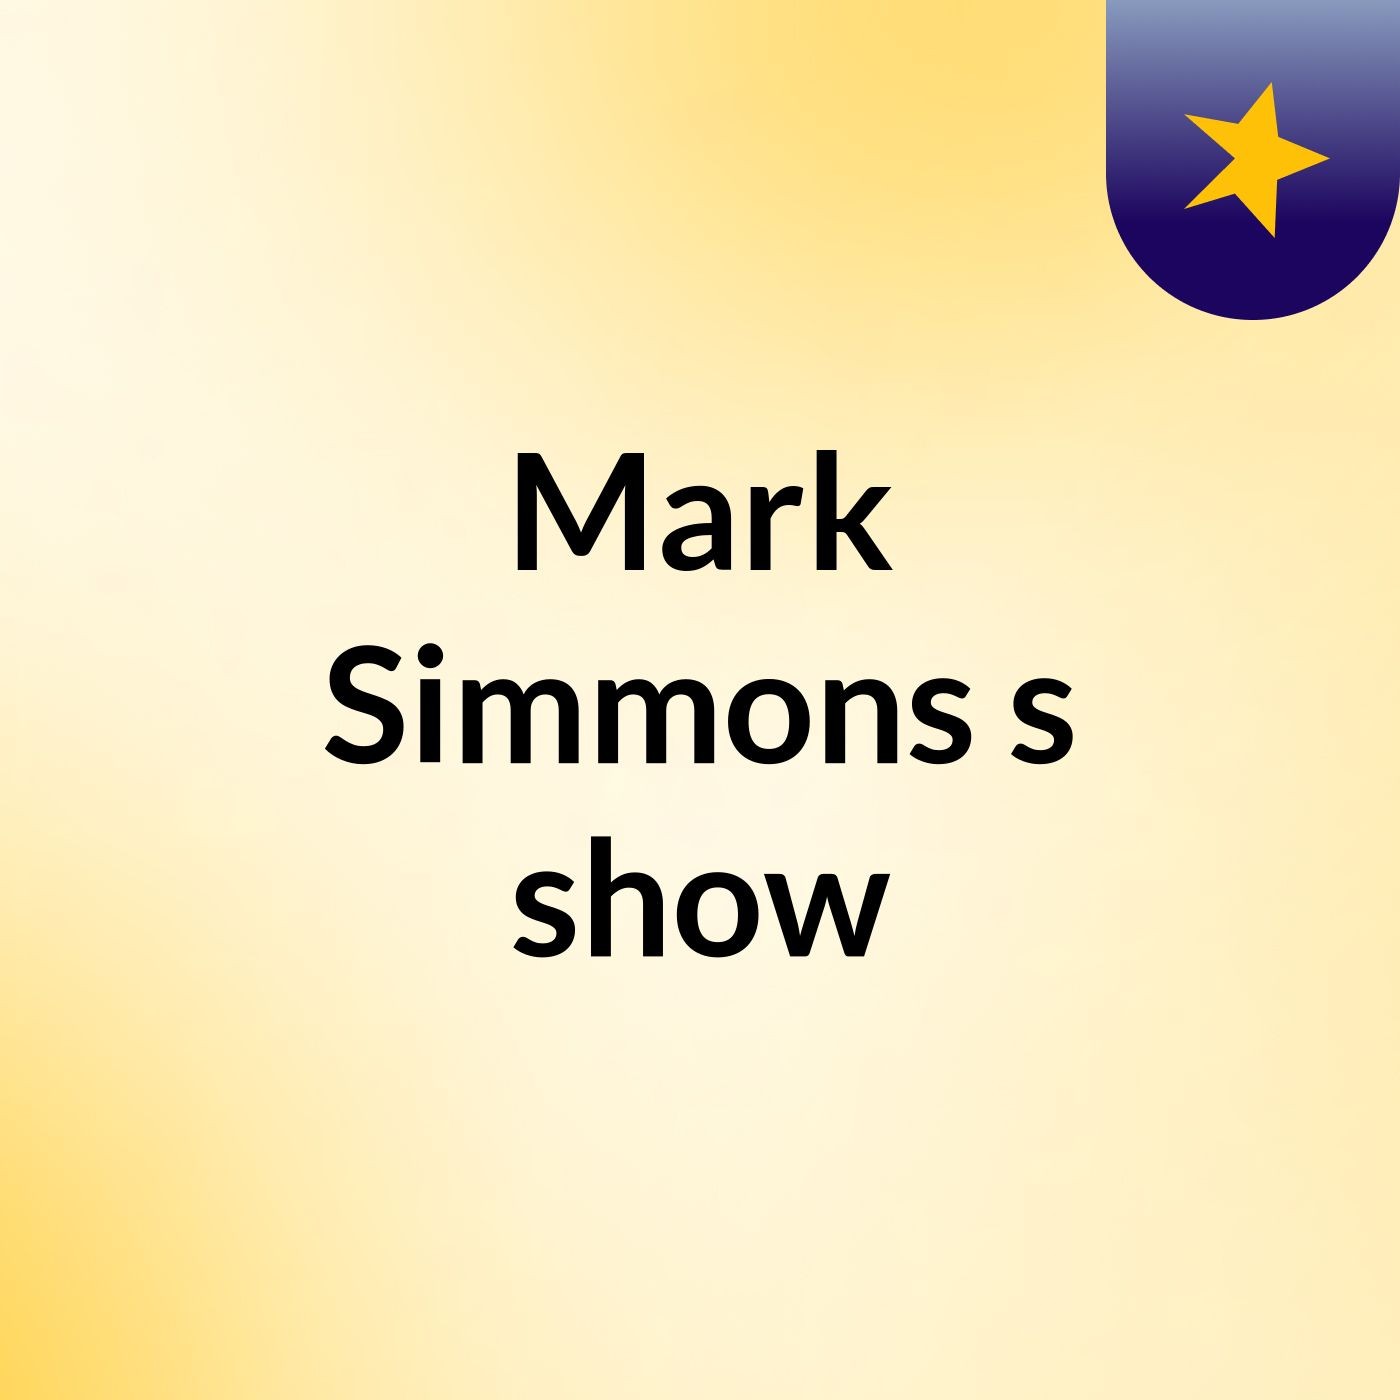 Mark Simmons's show